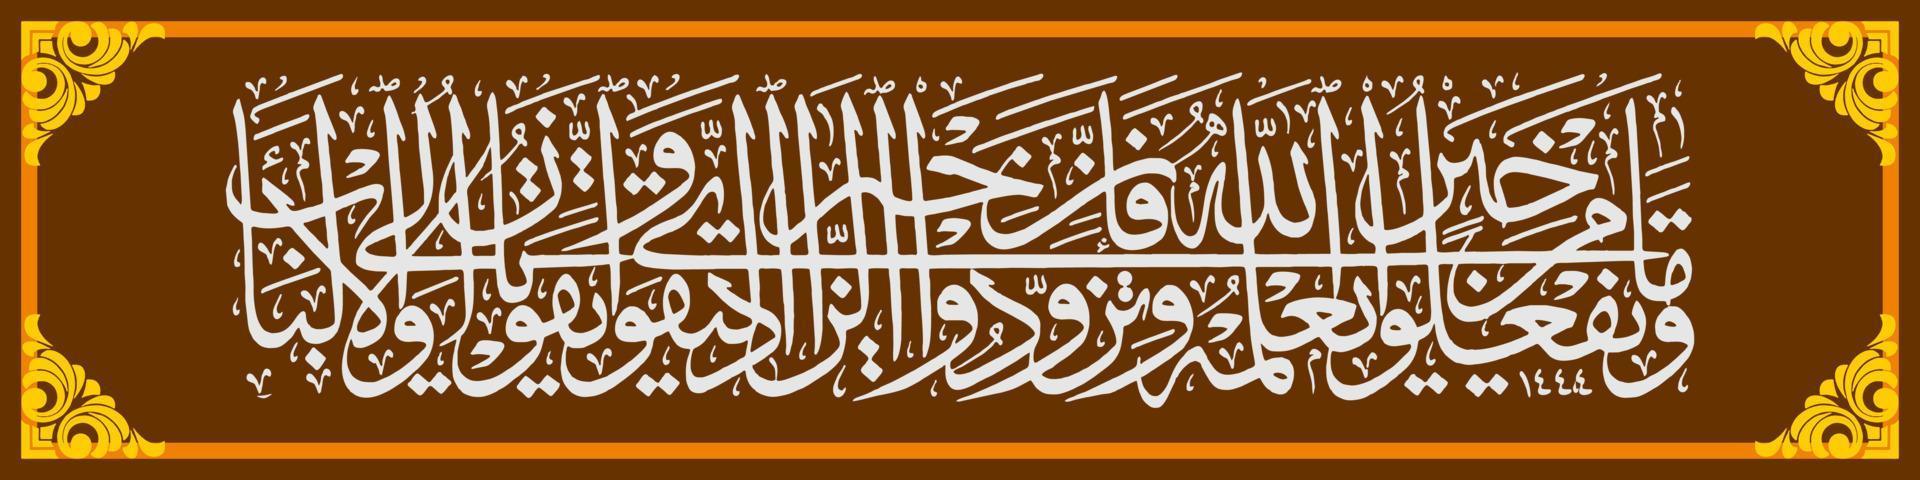 caligrafía árabe, al qur'an surah al baqarah 197, traducción todo lo bueno que haces, allah lo sabe. traer provisiones, porque en realidad la mejor provisión es la piedad. y tememe, vector